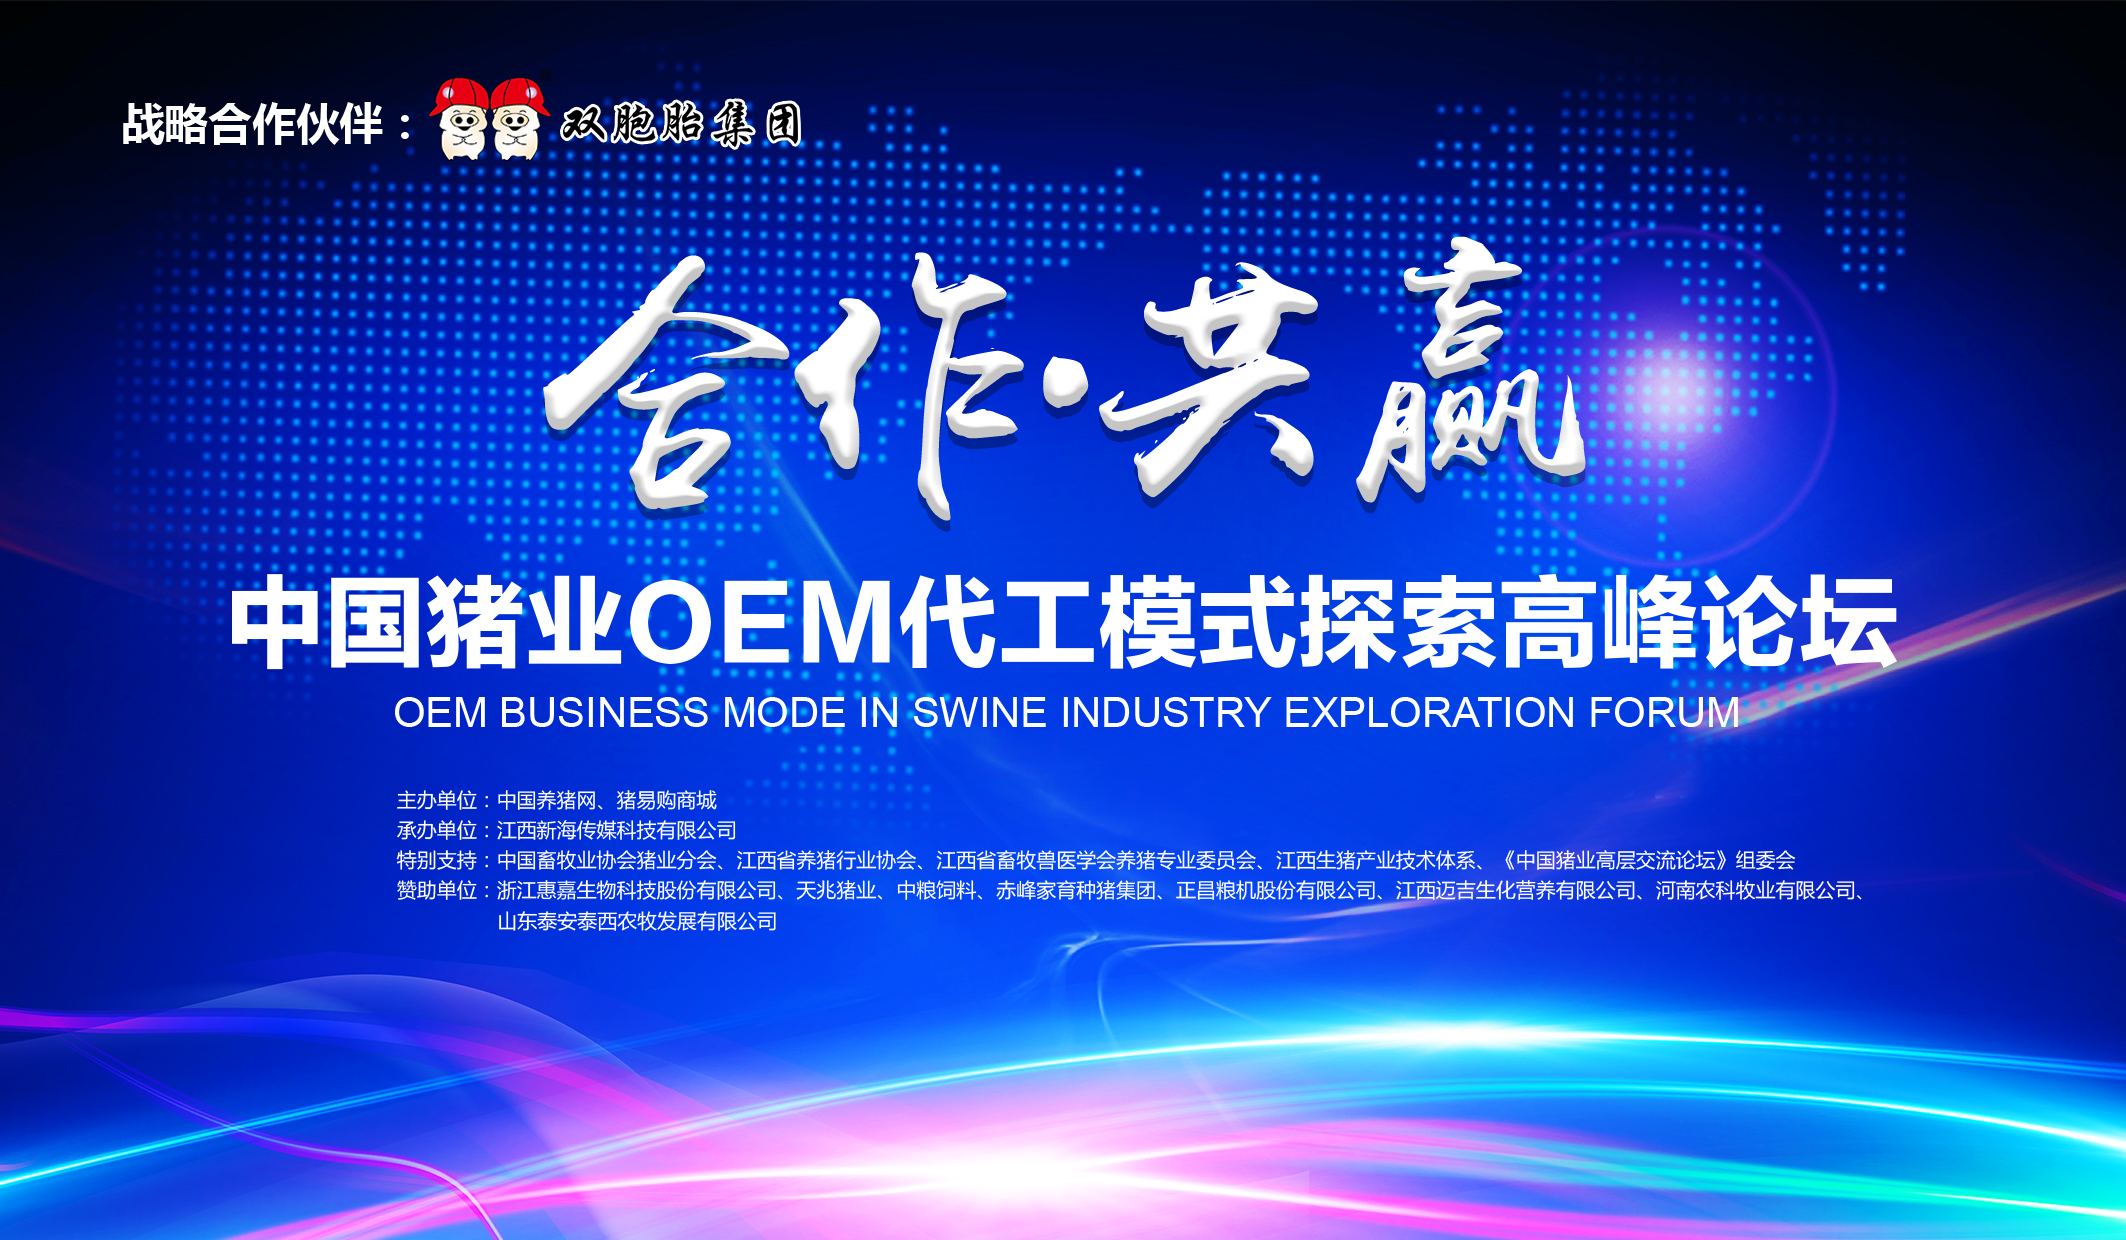 中国猪业OEM代工模式探索高峰论坛 网络视频现场直播